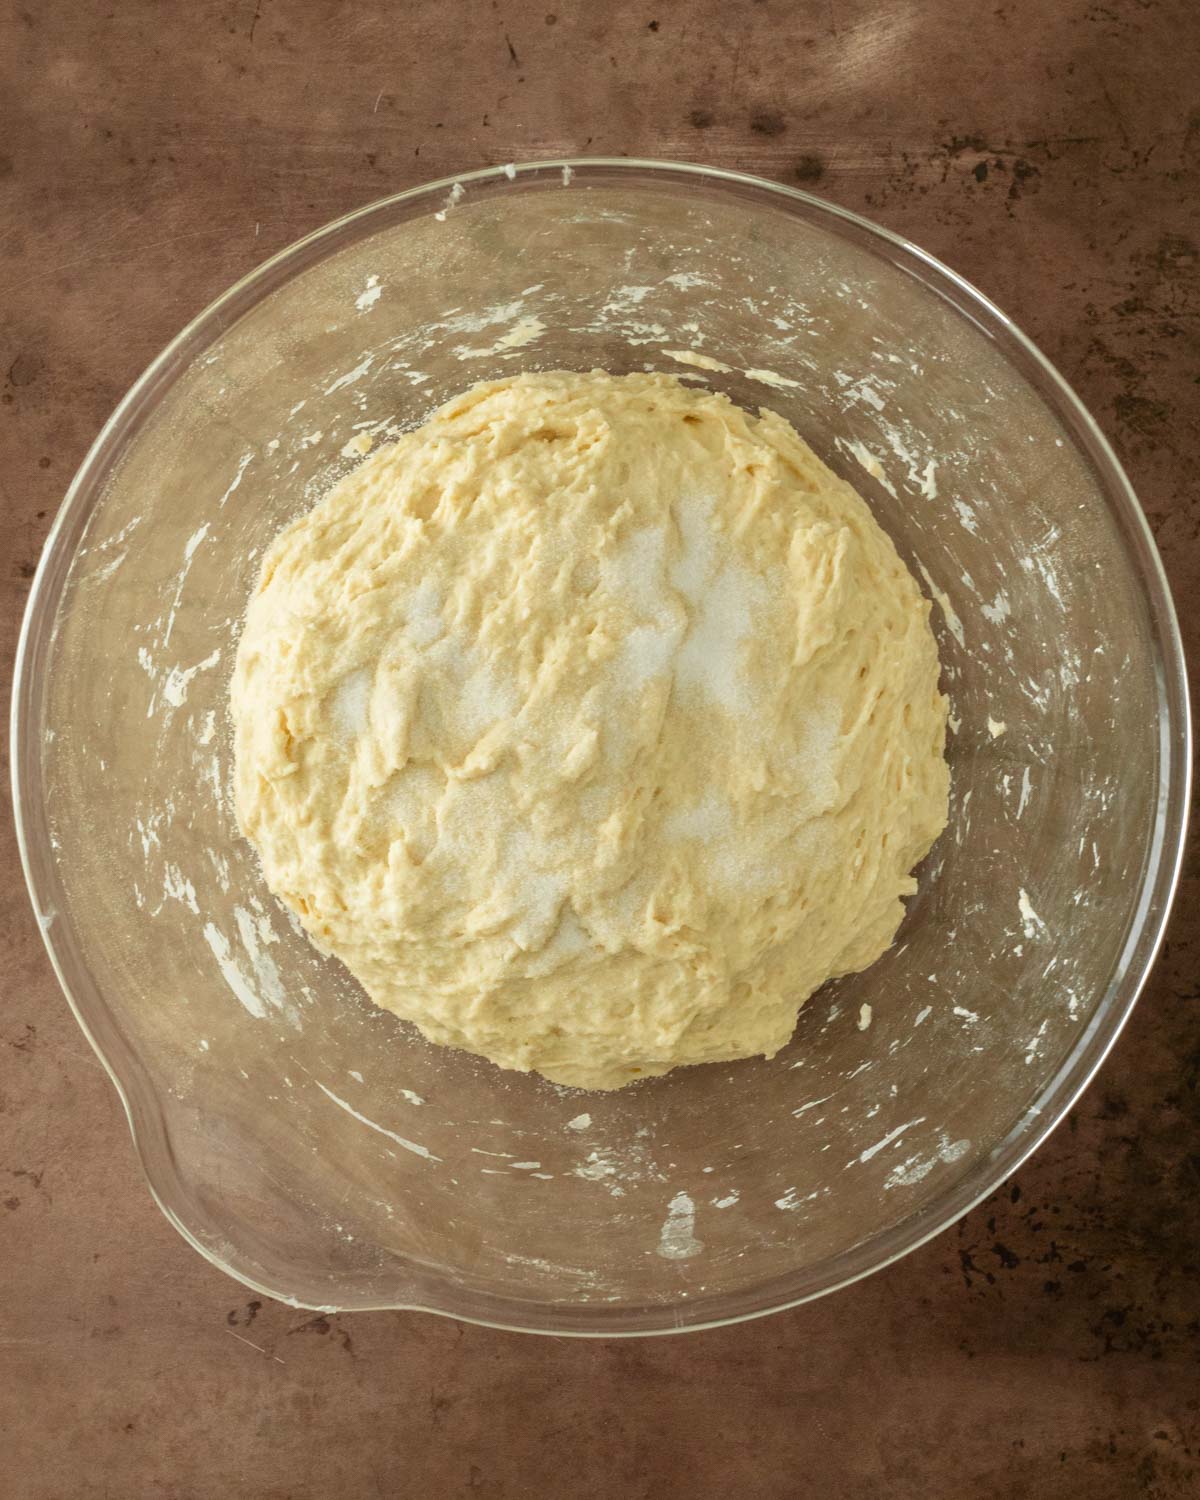 Step 5. Sprinkle the salt on top of the dough